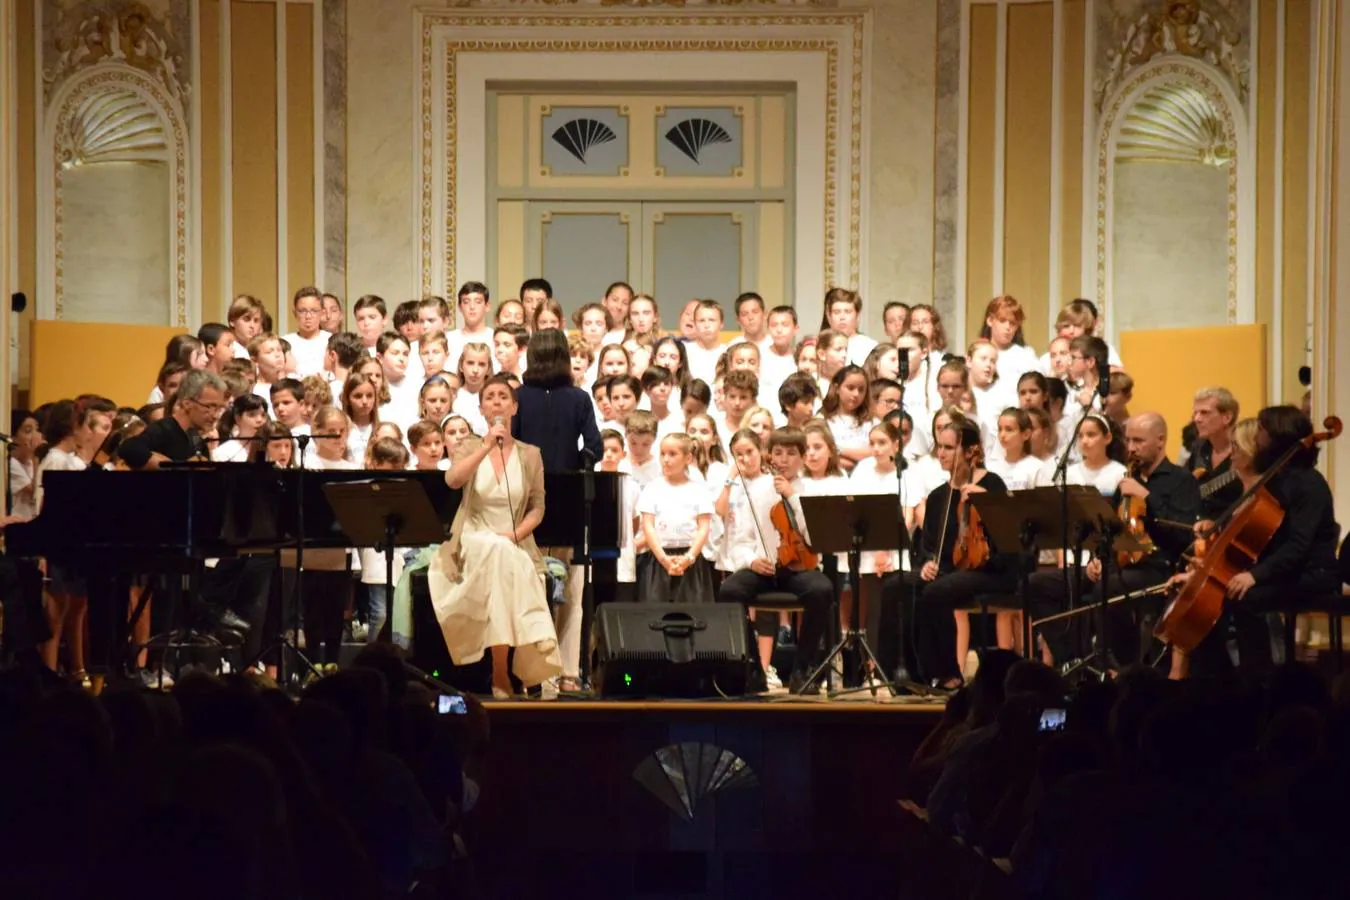 El Liceo Francés celebra su 50 aniversario con conciertos protagonizados por sus alumnos. Un instante del concierto en la sala María Cristina.